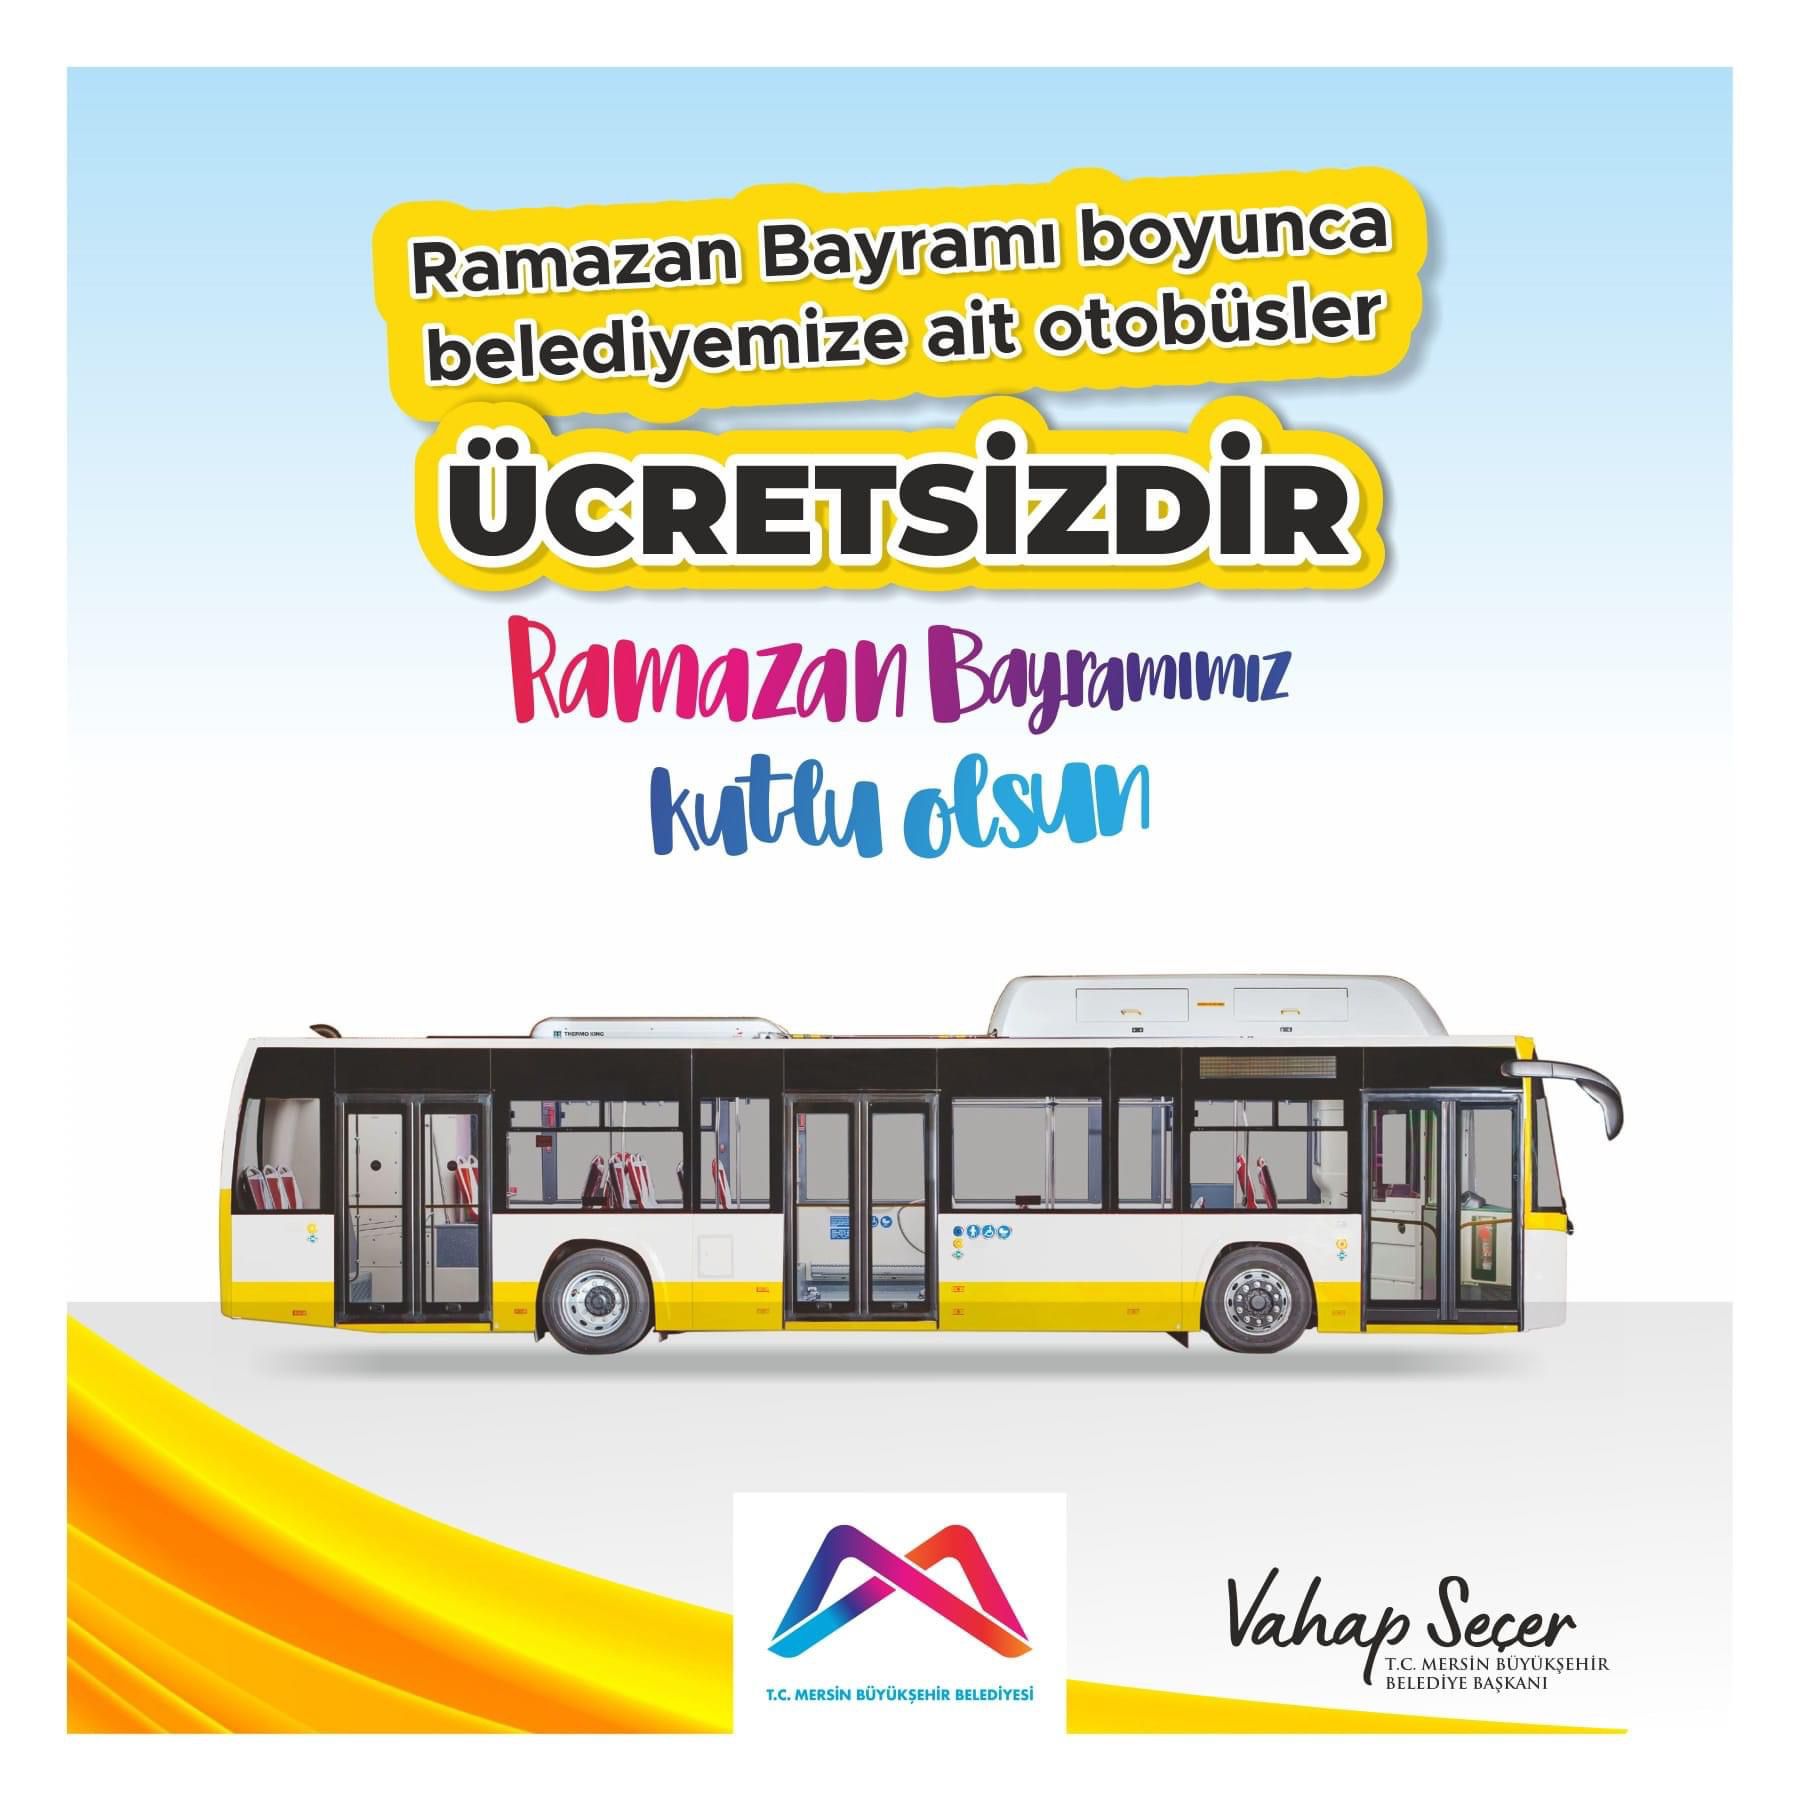 Ramazan Bayramı boyunca belediyemize ait otobüsler ücretsizdir